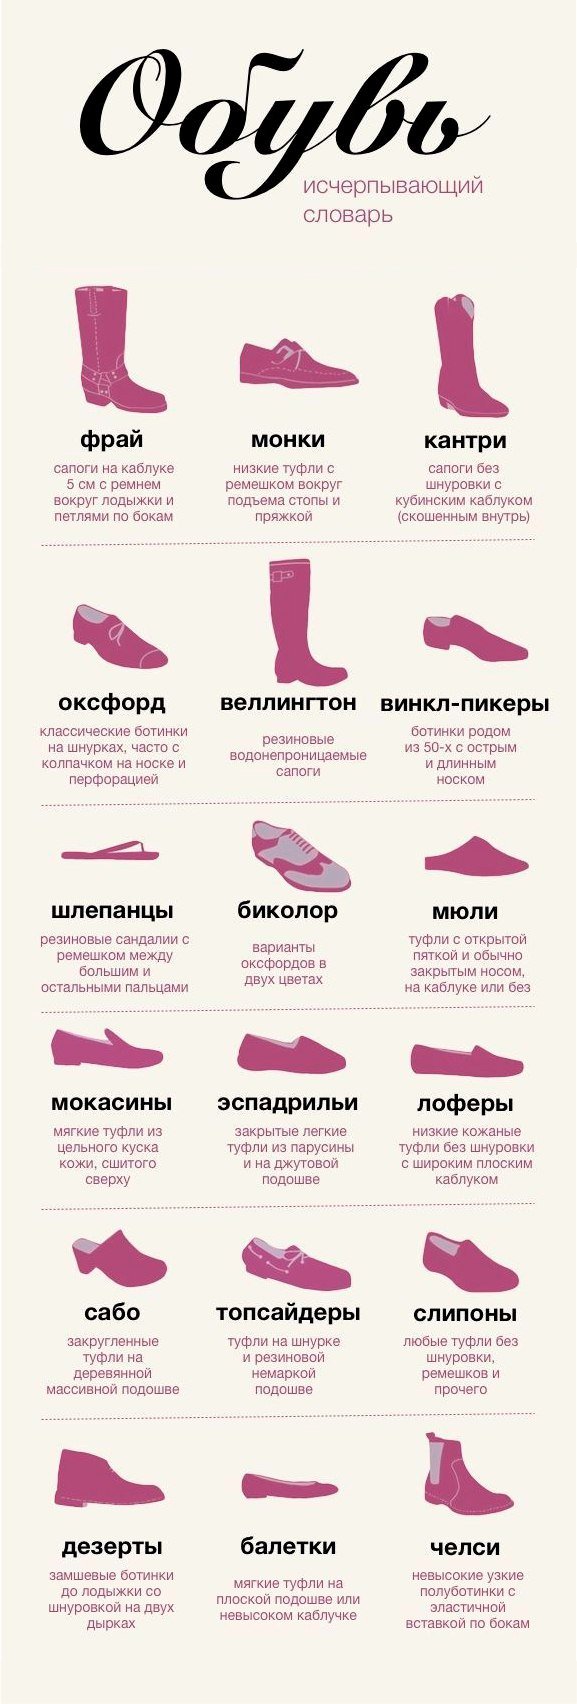 Название обуви список. Название обуви. Обувь название моделей. Наименование обуви женской. Женская обувь названия моделей.